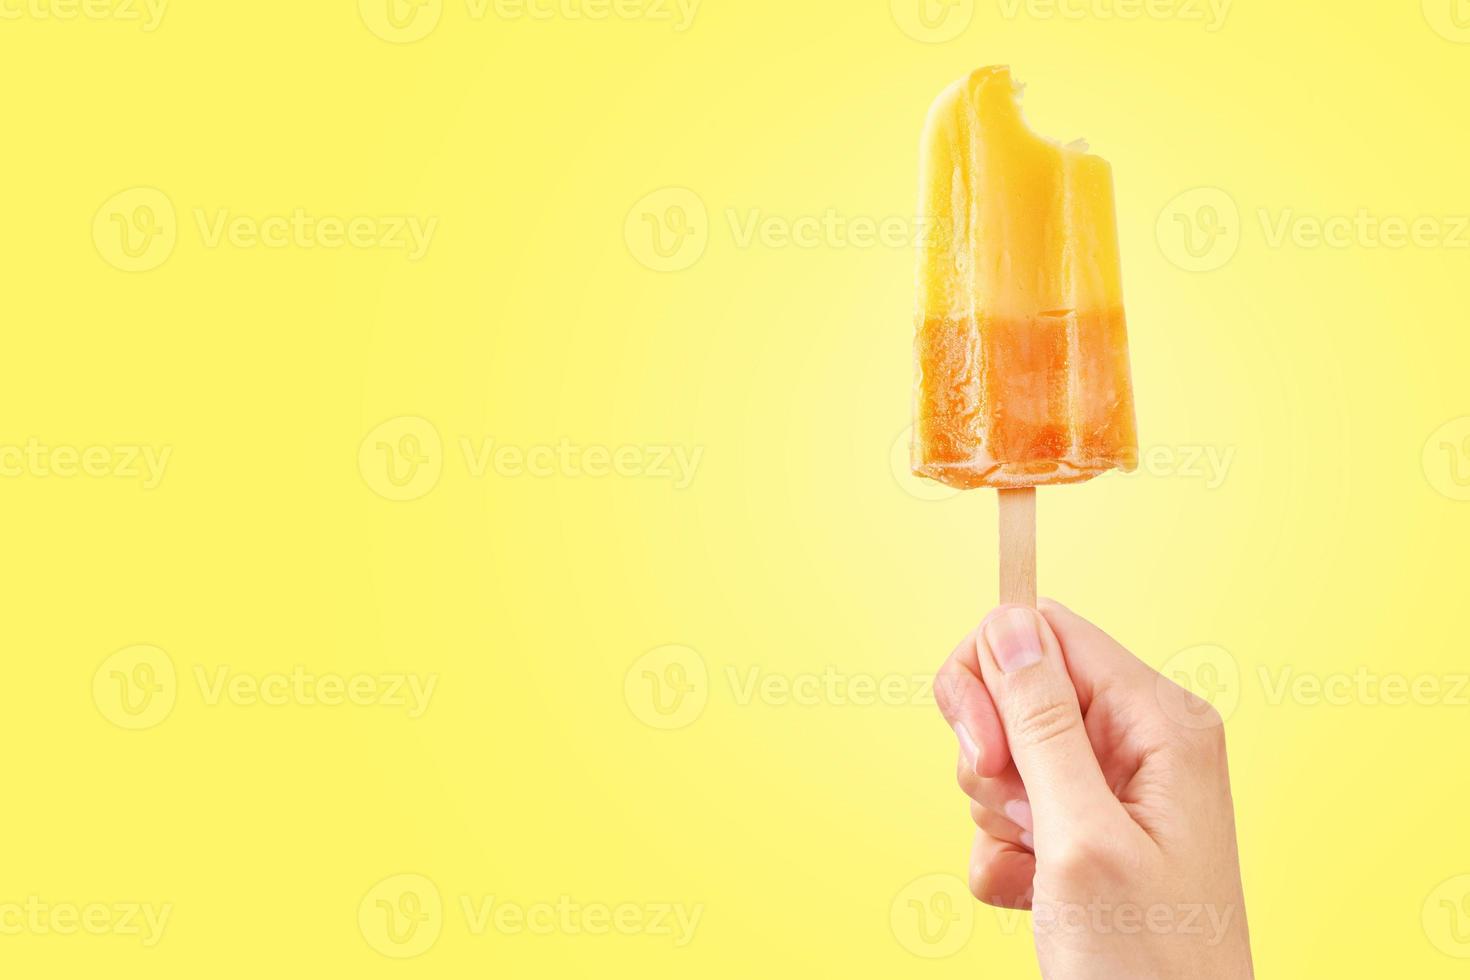 Popsicle de crème glacée aux fruits congelés rouges mordus dans la main de la femme sur fond jaune photo